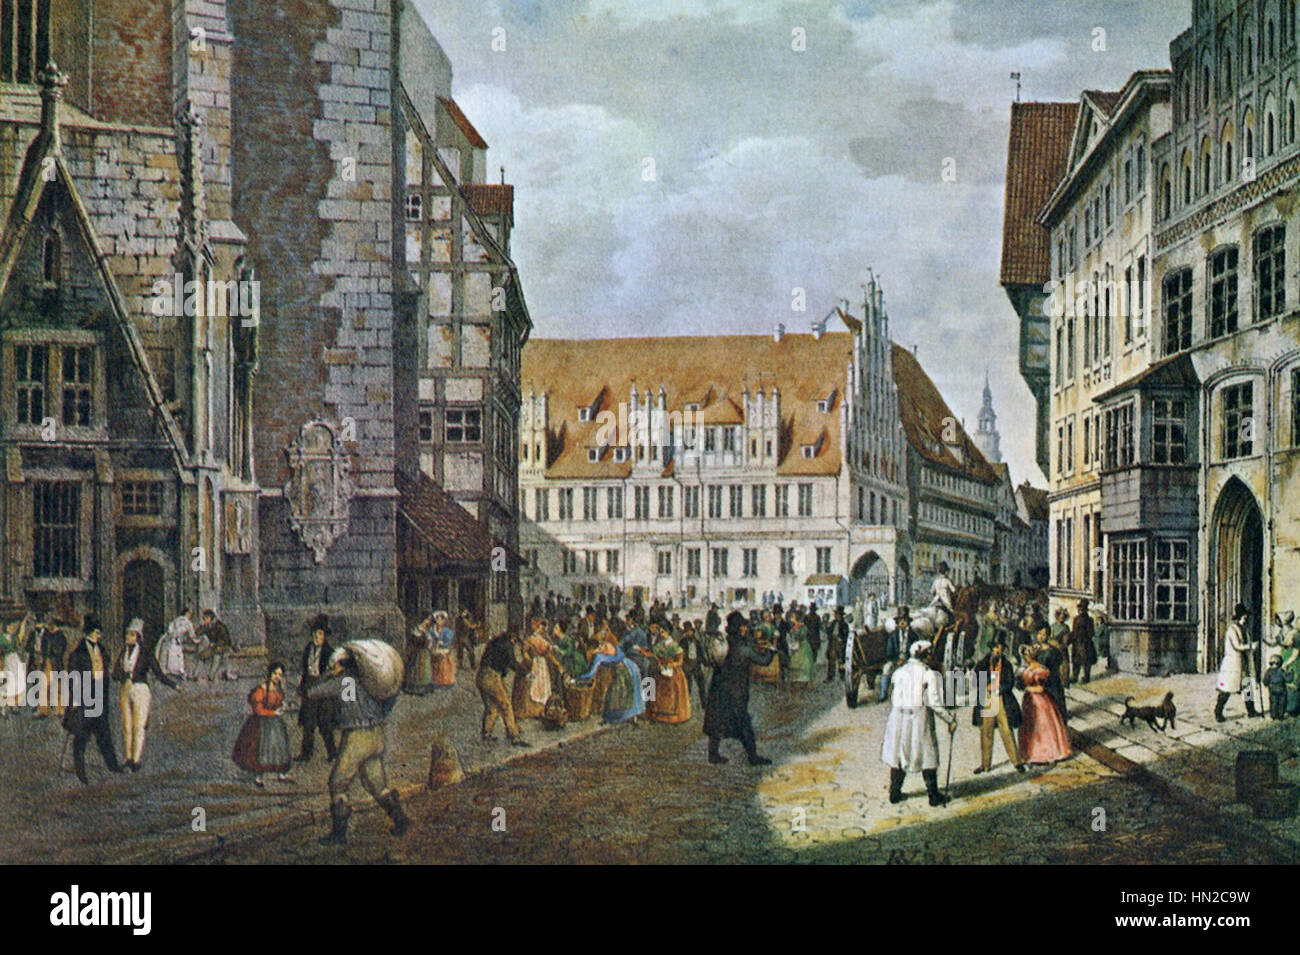 Marktplatz Hannover. Farbige Lithographie von Rudolph Wiegmann 1834 Stock Photo